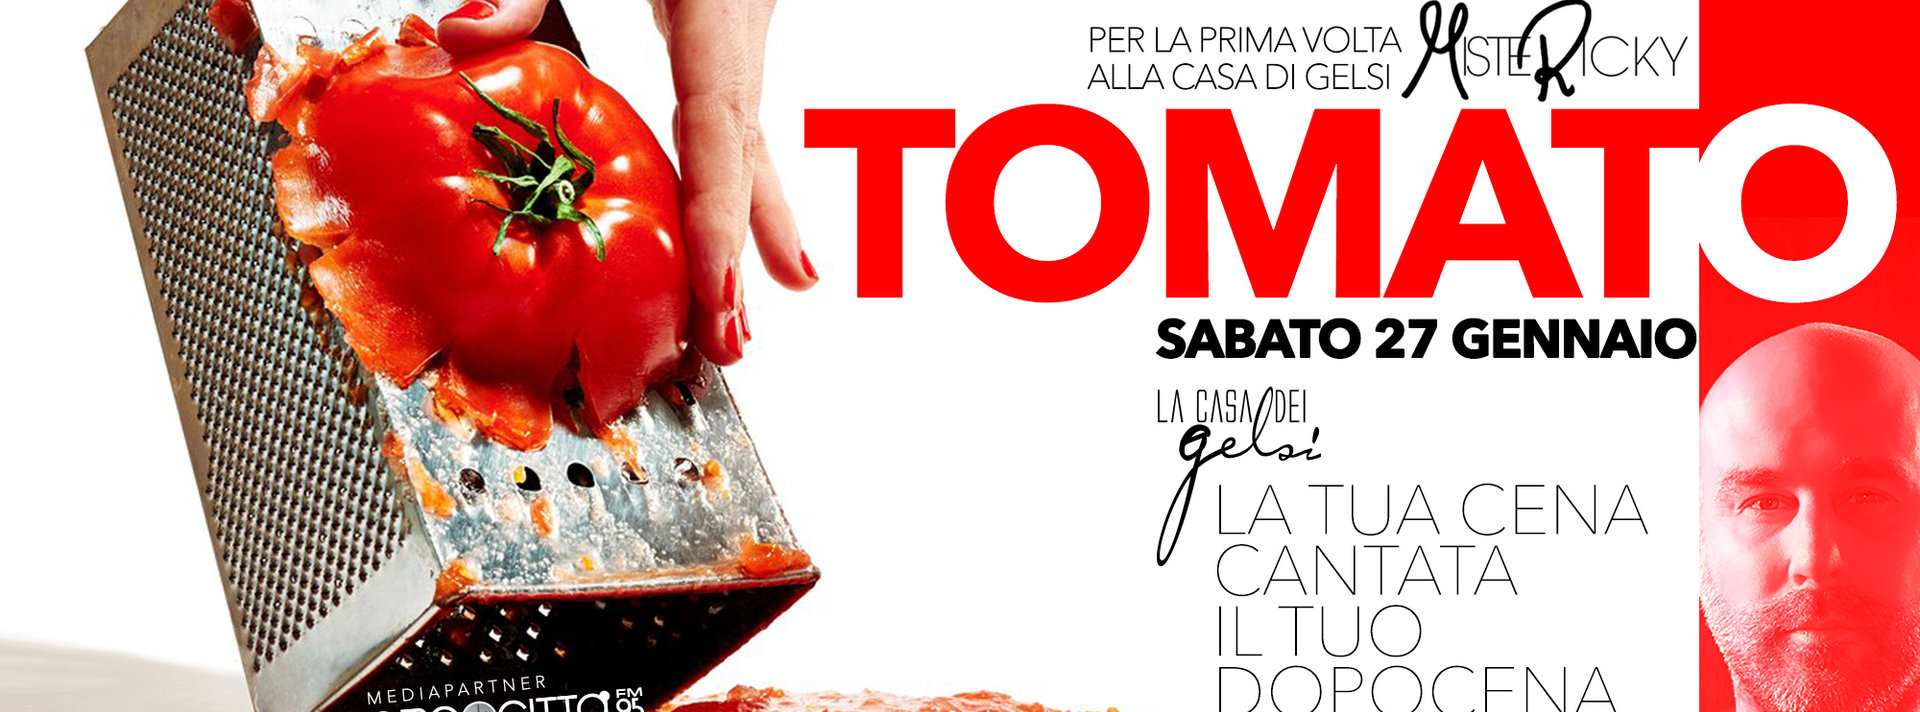 Tomato - sabato sera alla Casa dei Gelsi